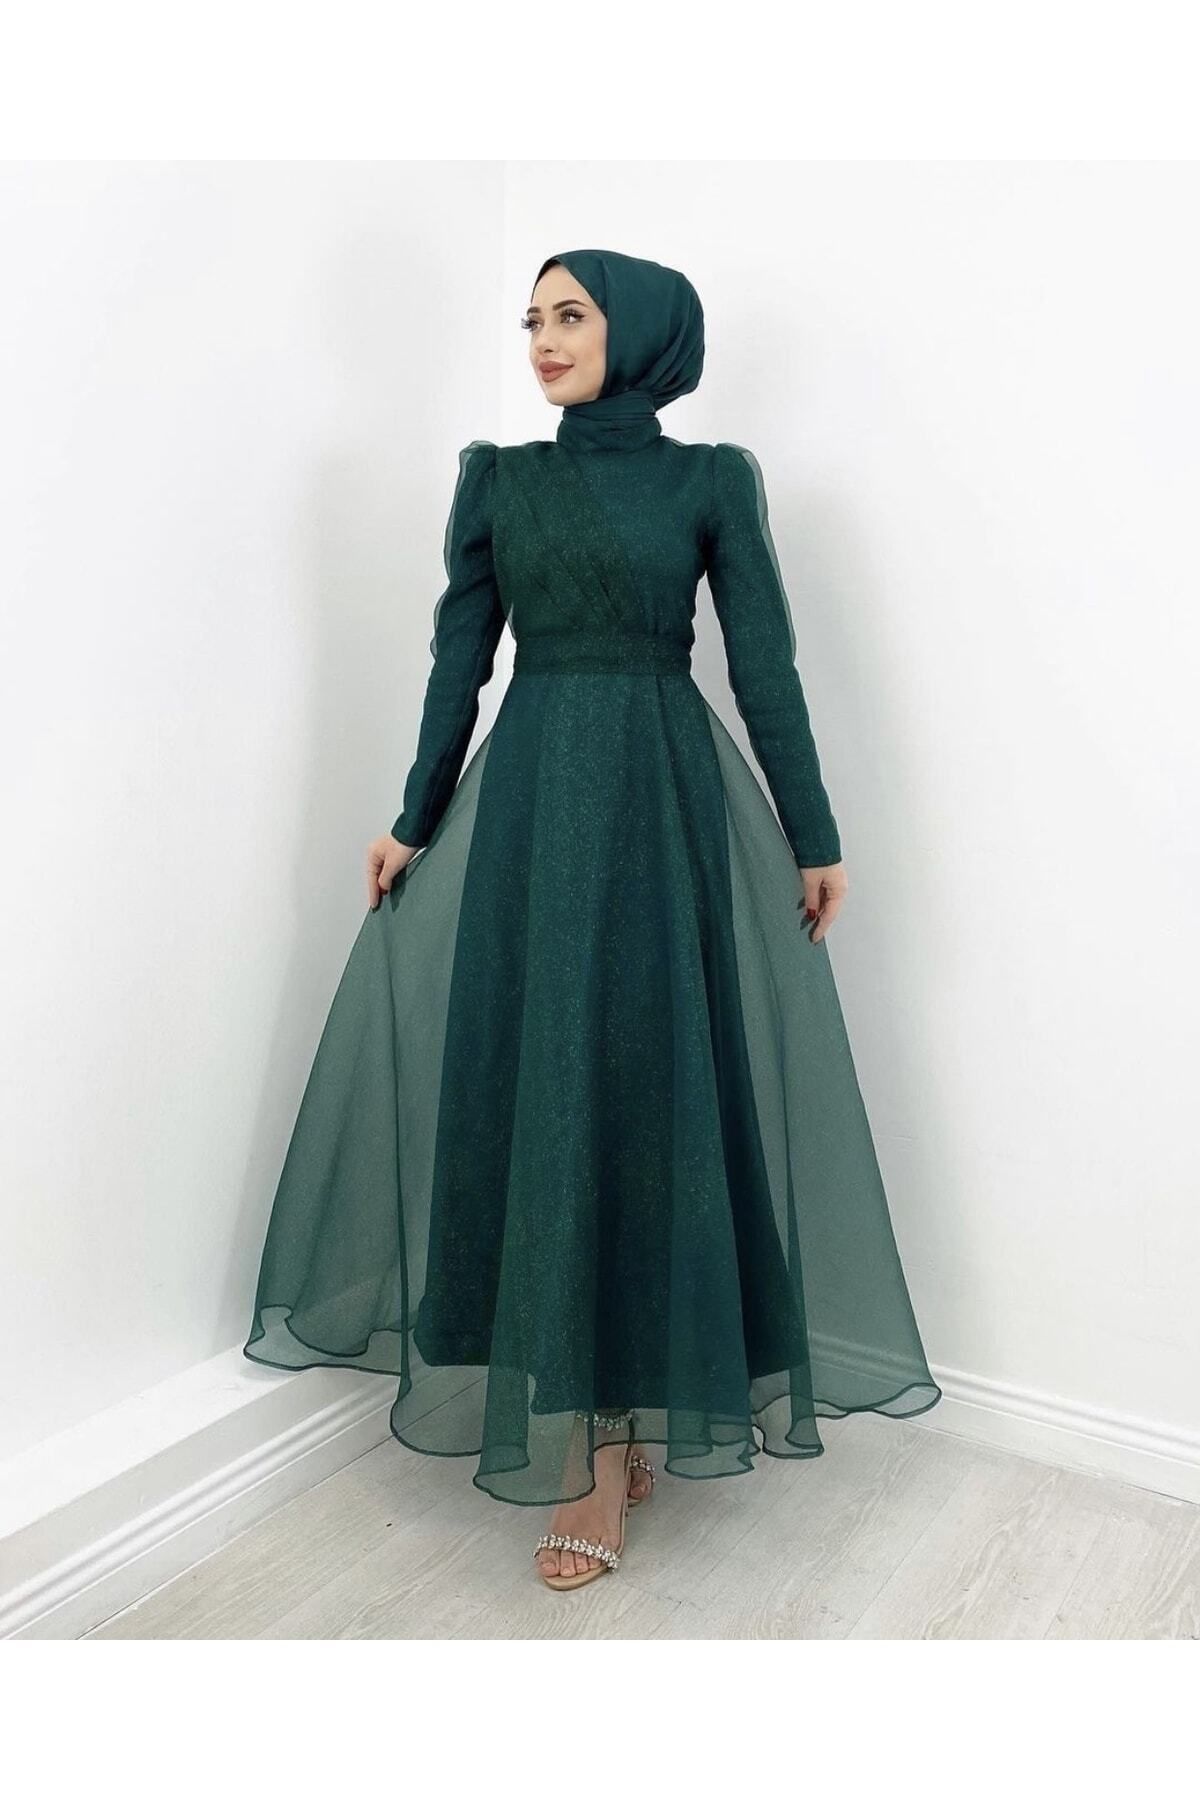 MERVEPLUME Tesettür Simli Organze Tül Abiye Tasarım Elbise Moda Düğün Şıklığı – Yeşil